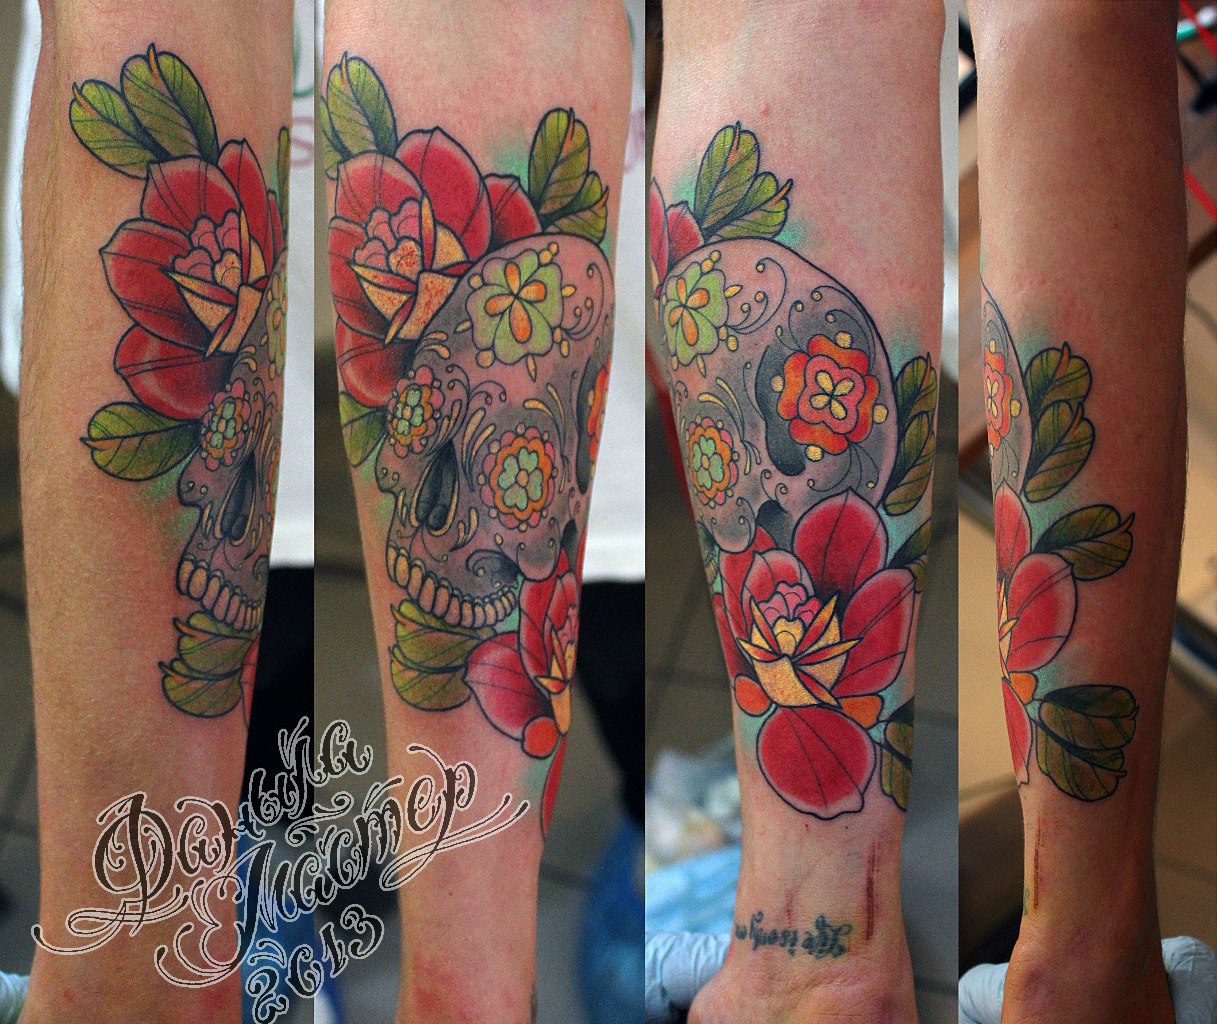 Художественная татуировка "Череп с розами" от Данилы - мастера.